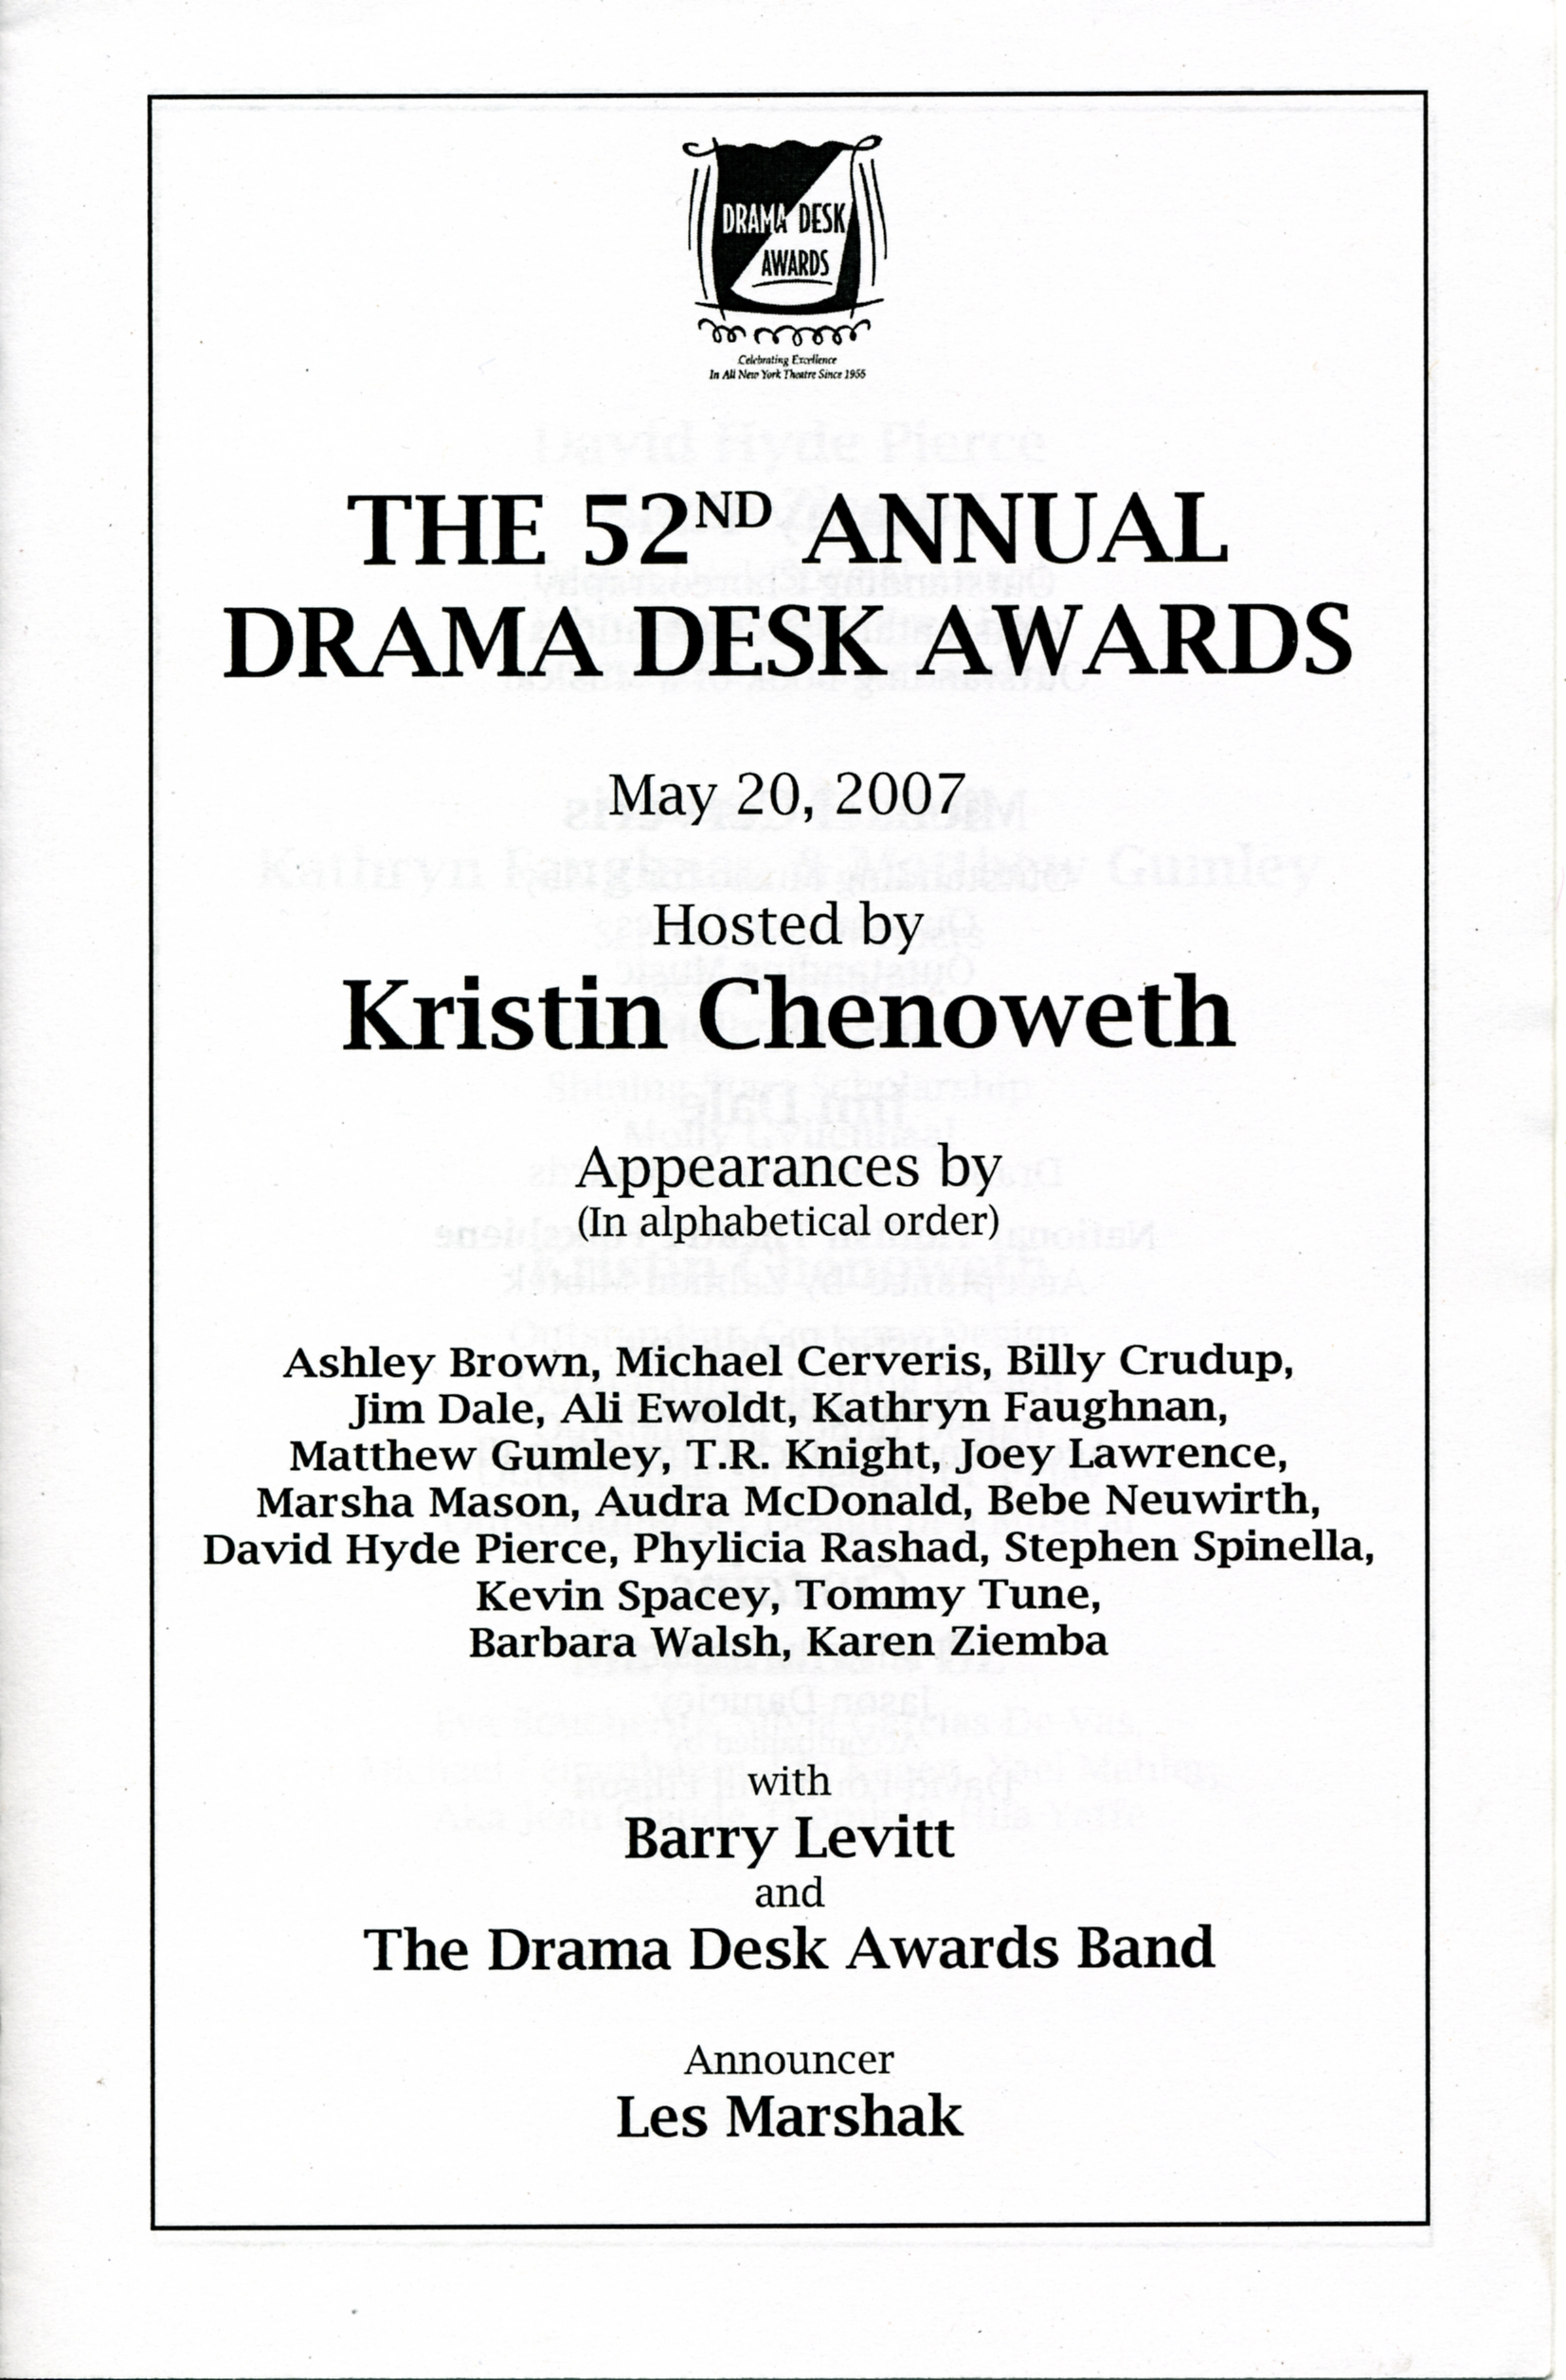 Drama Desk award